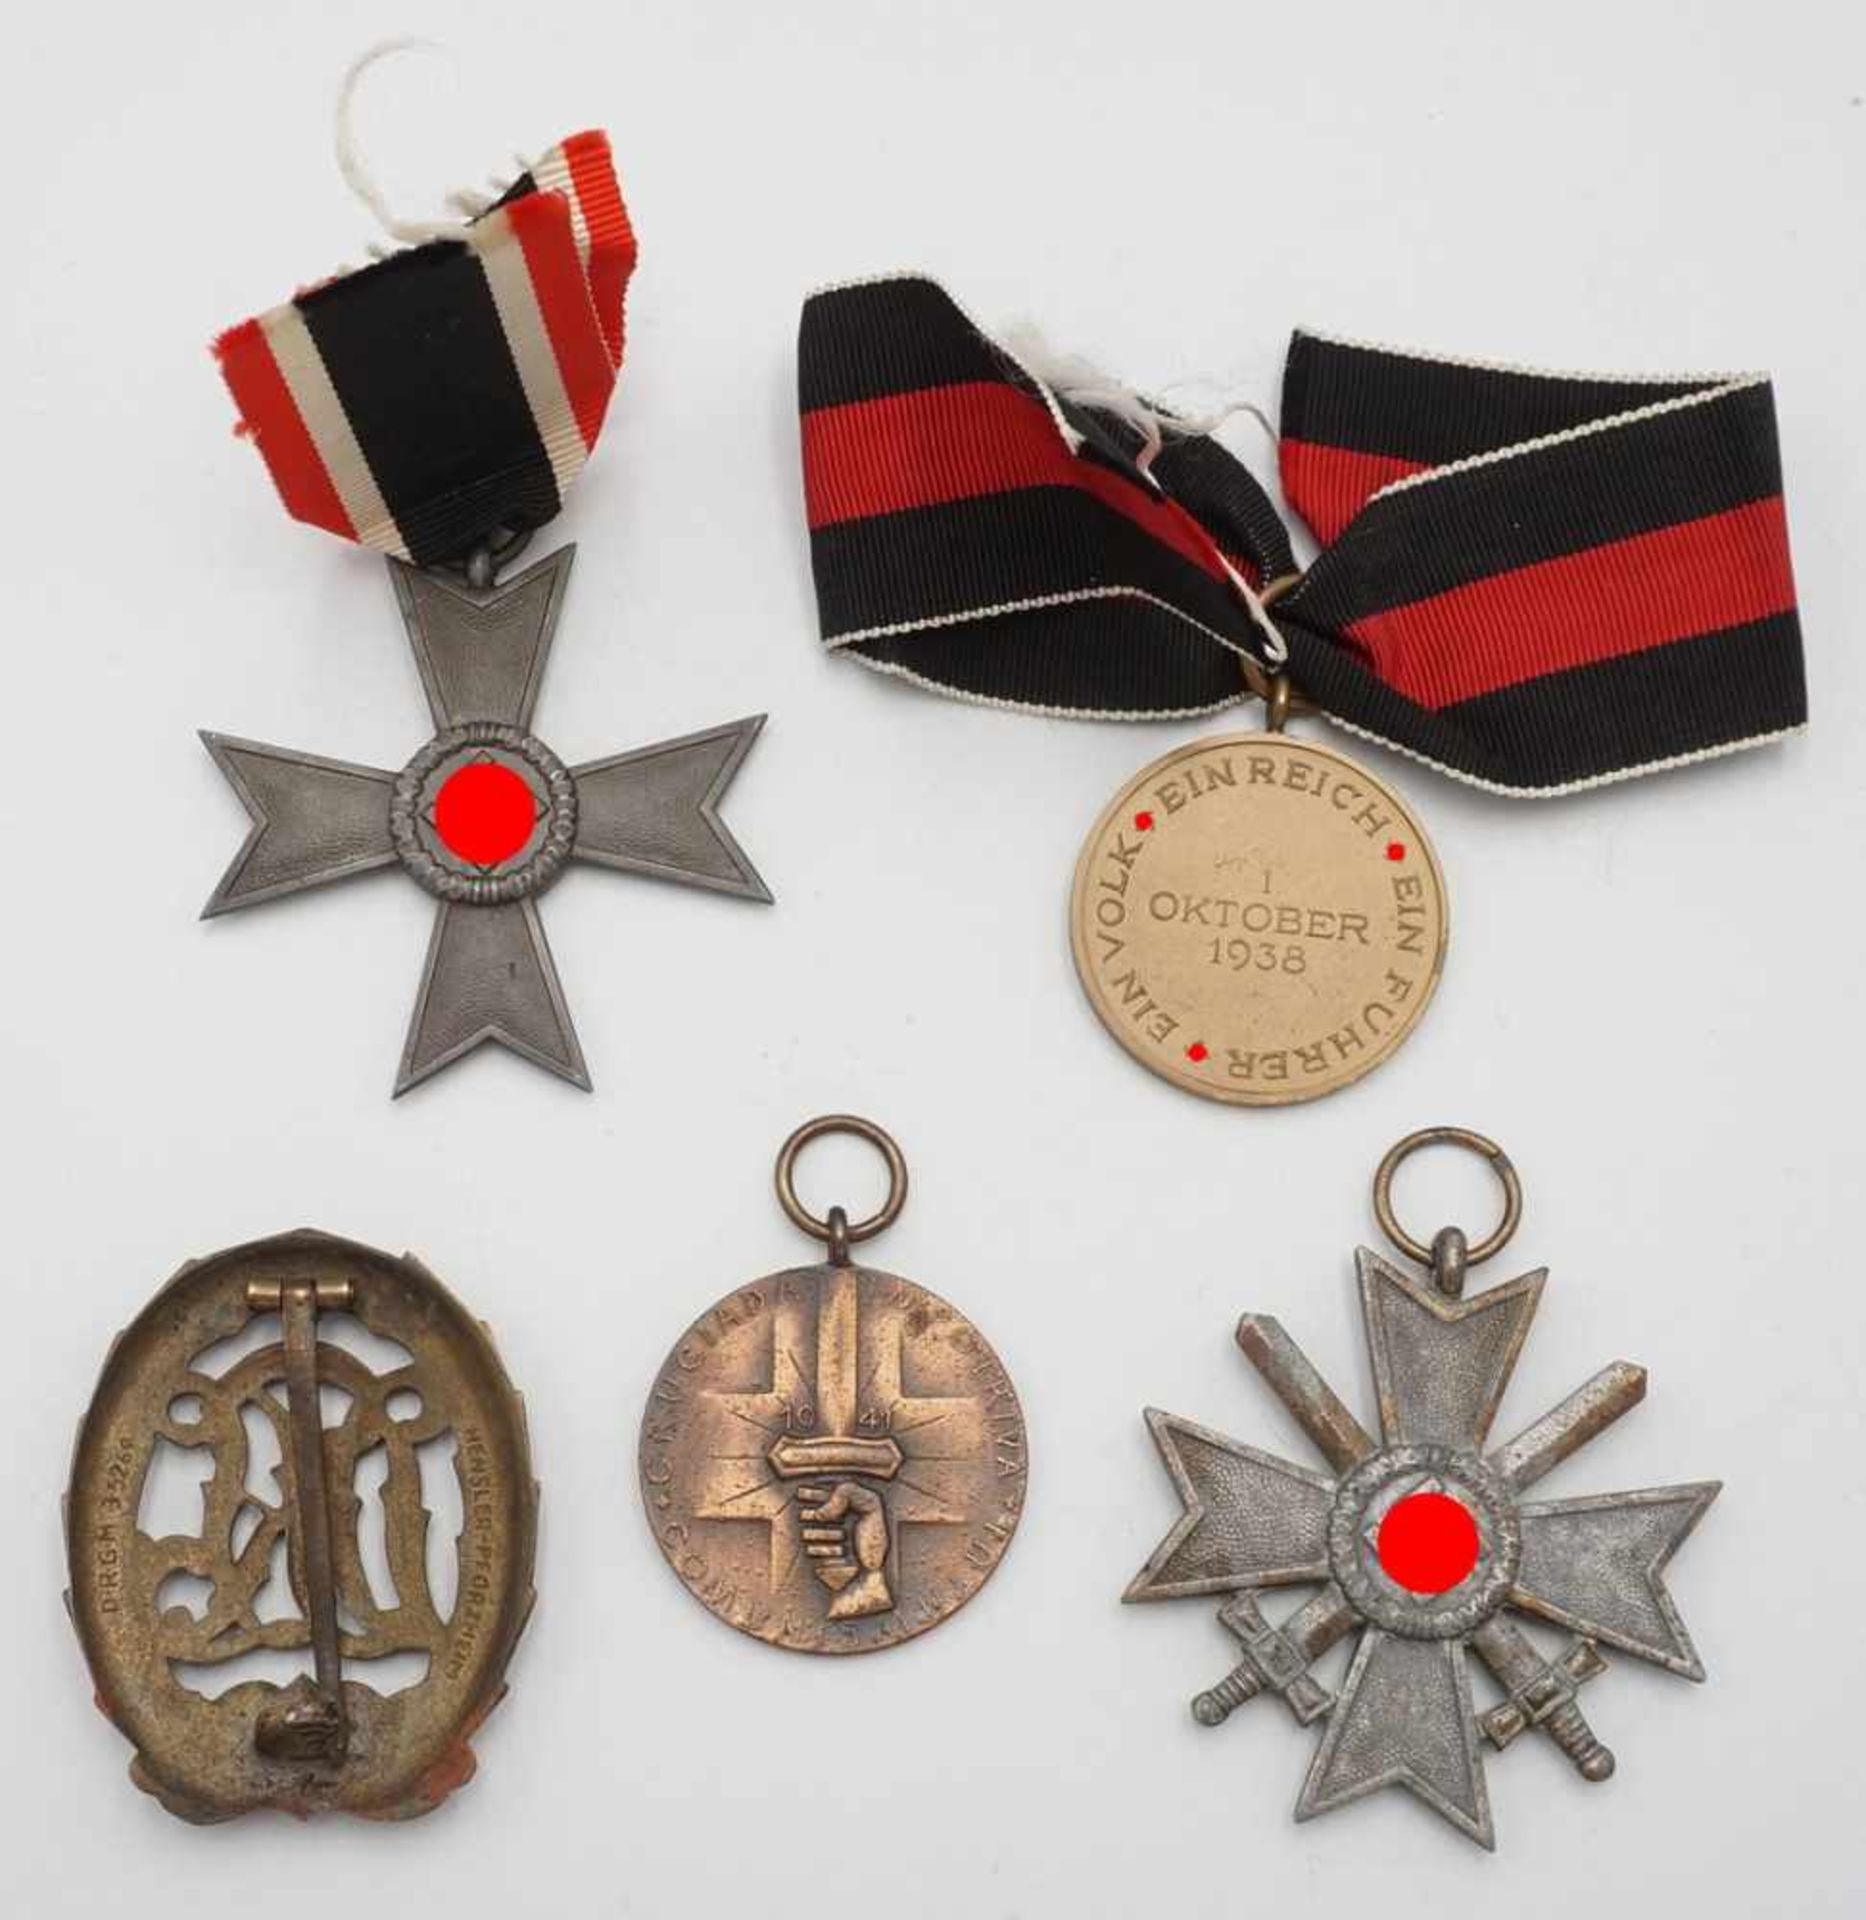 Fünf Orden 2. Weltkriegsog. III. Reich, KVK 2. Klasse mit und ohne Schwerter, Sportabzeichen Bronze, - Image 2 of 2